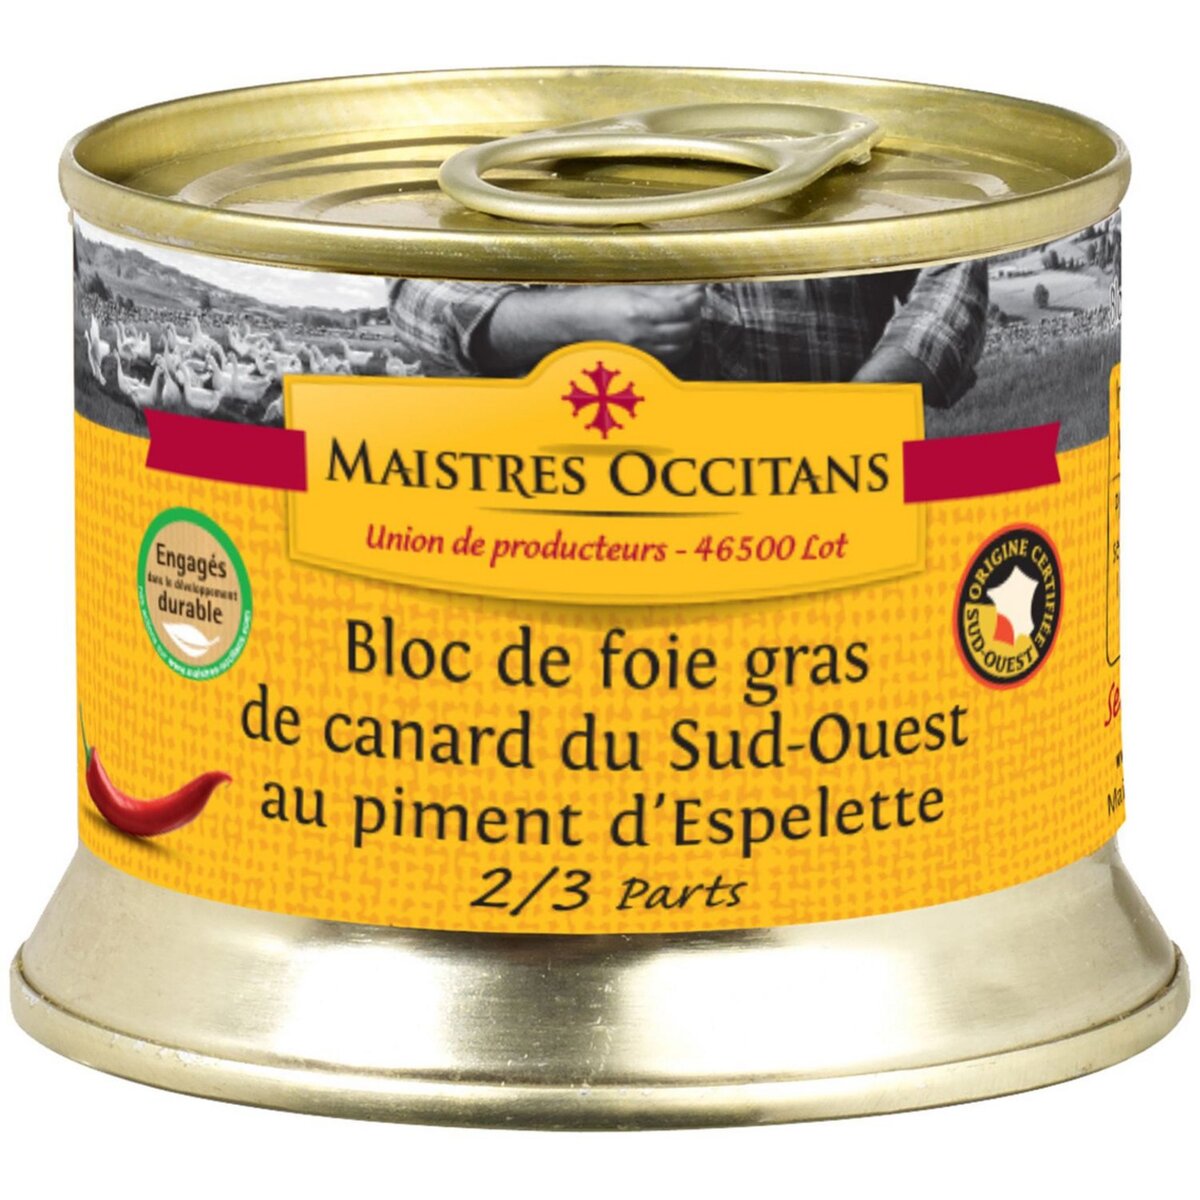 MAISTRES OCCITANS Bloc de foie gras de canard du sud-ouest au piment 2-3 parts 140g